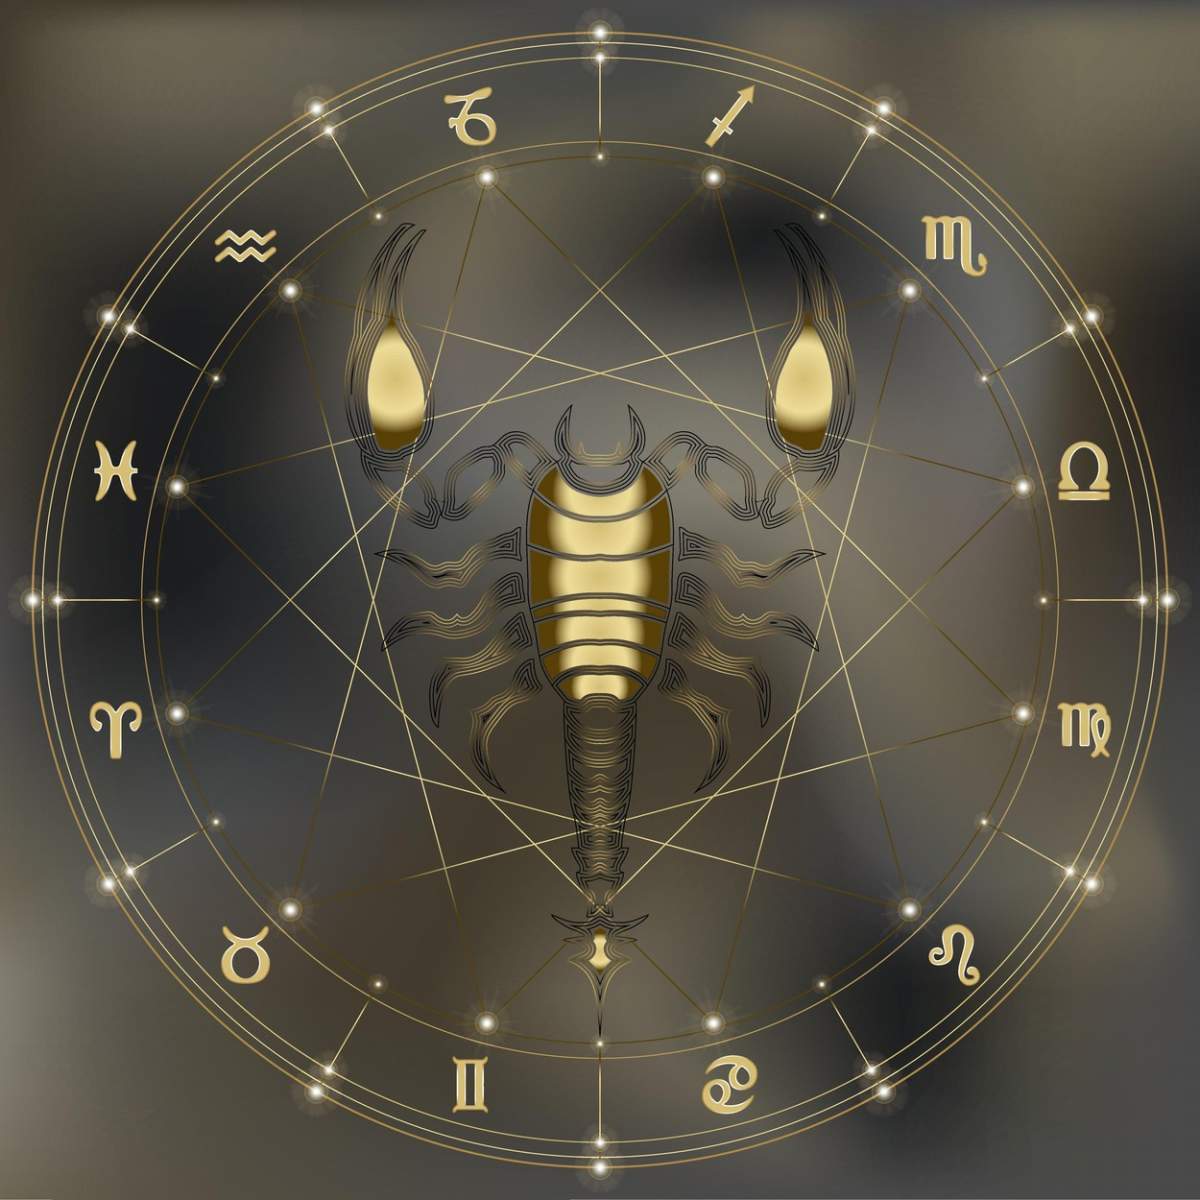 Fotografie cu horoscopul și zodia Scorpion în centru